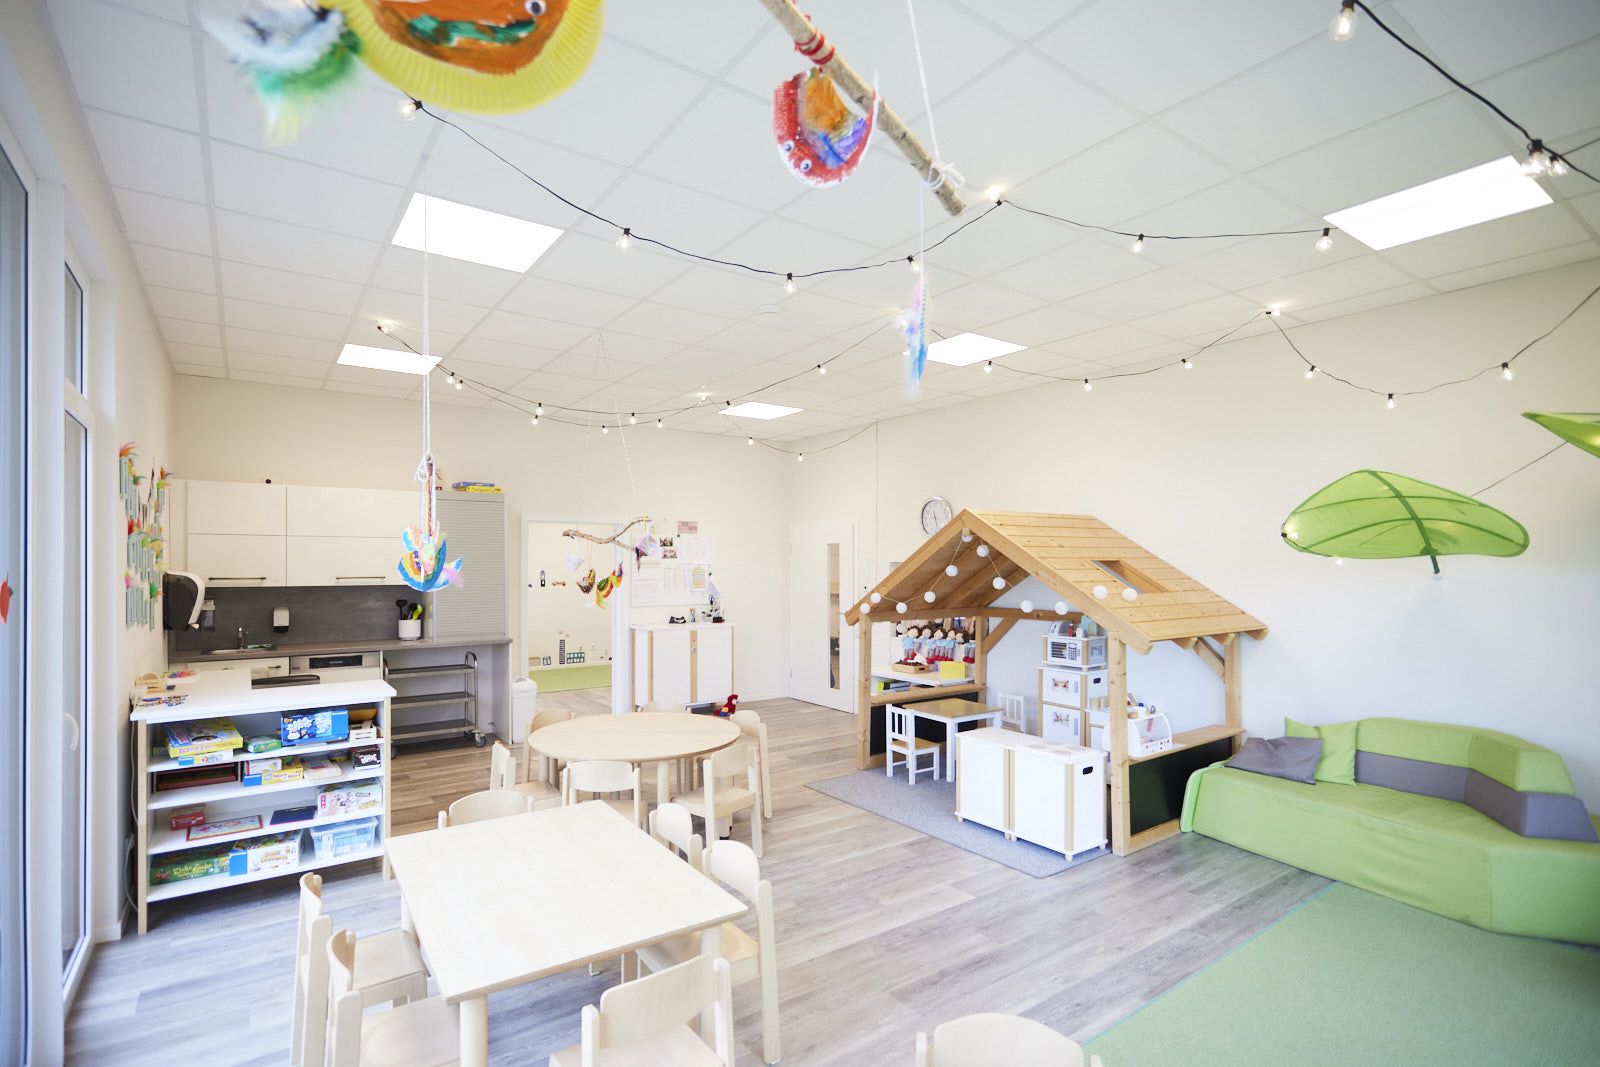 AHF Kindertagesstätte in Bad Lippspringe. Gruppenraum mit Küche. Holzhäuschen, Tische und Kinderstühle. EPU Architekten